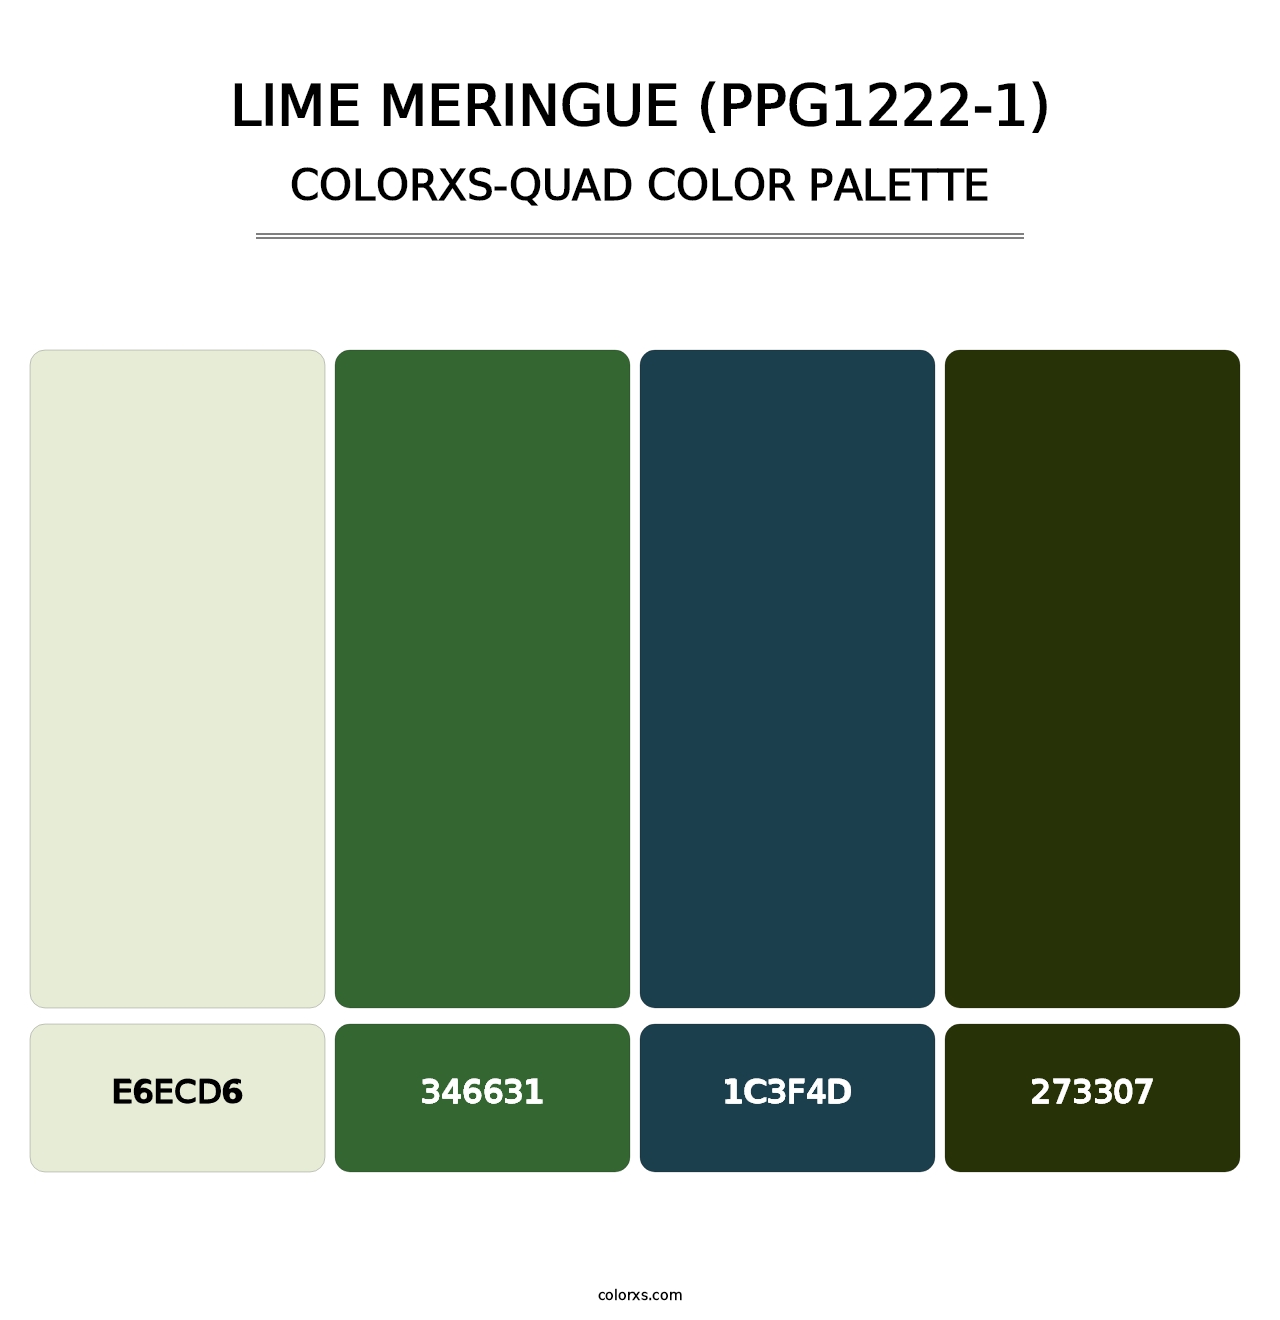 Lime Meringue (PPG1222-1) - Colorxs Quad Palette